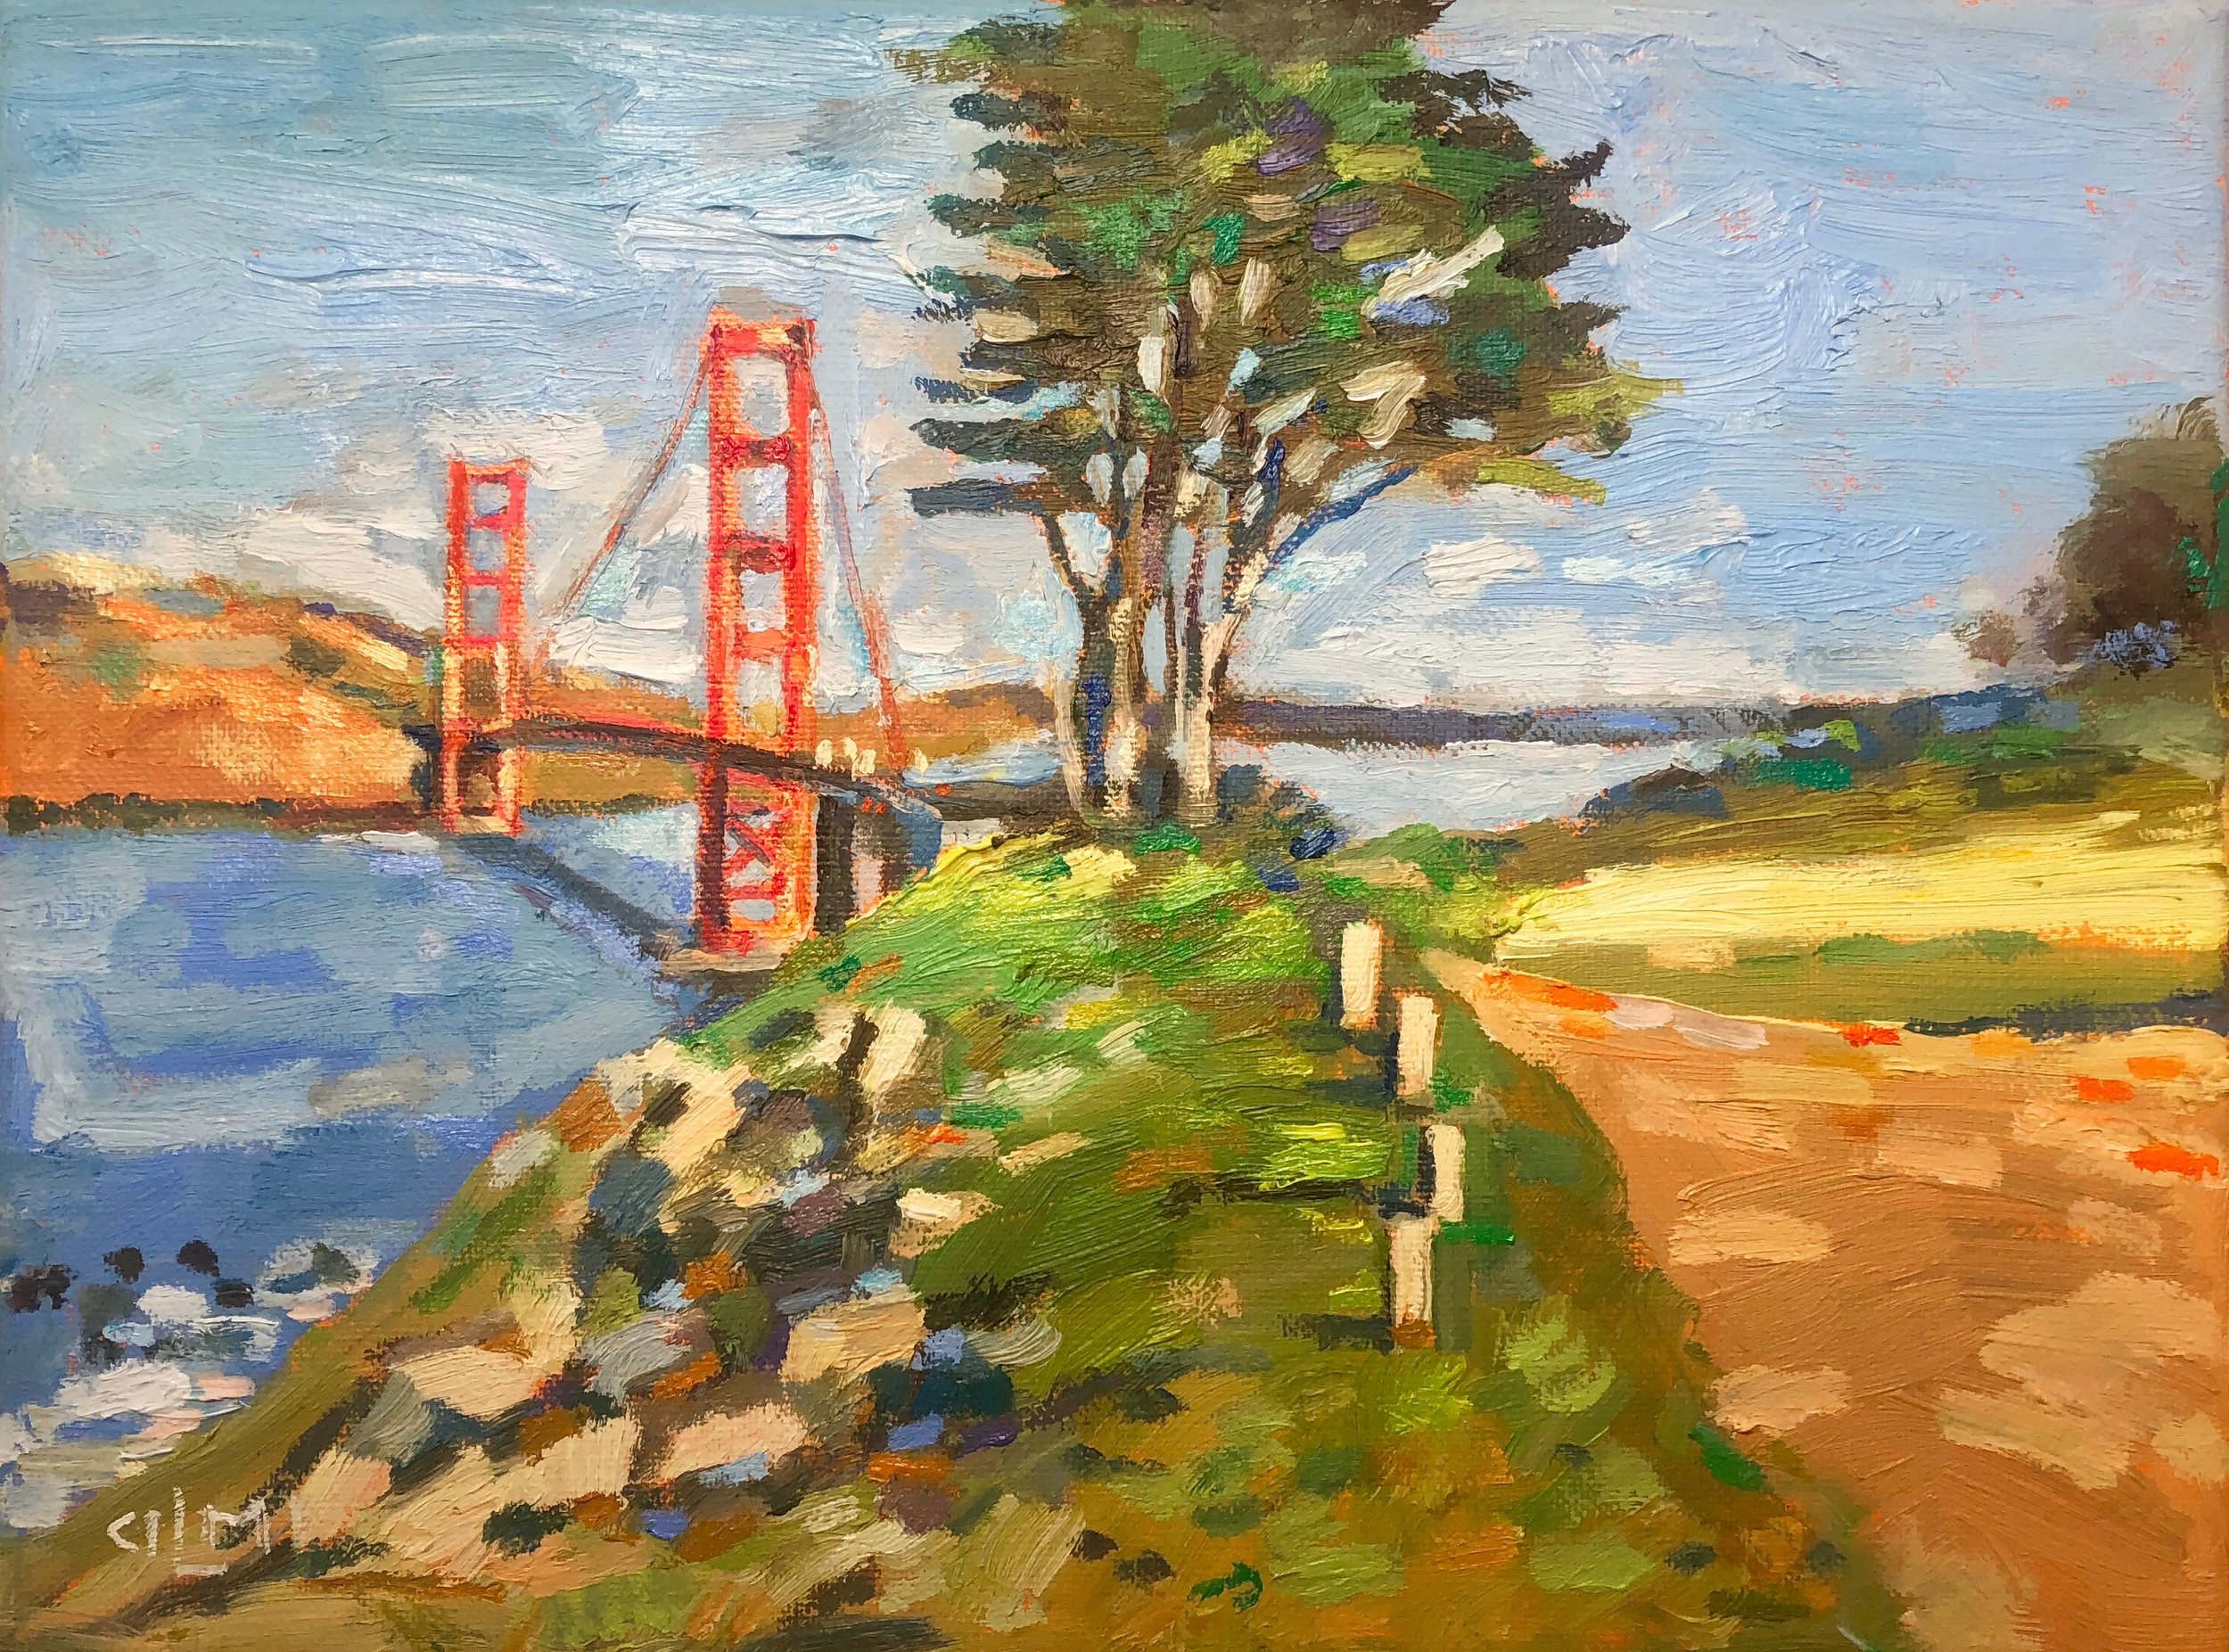 Golden Gate Overlook